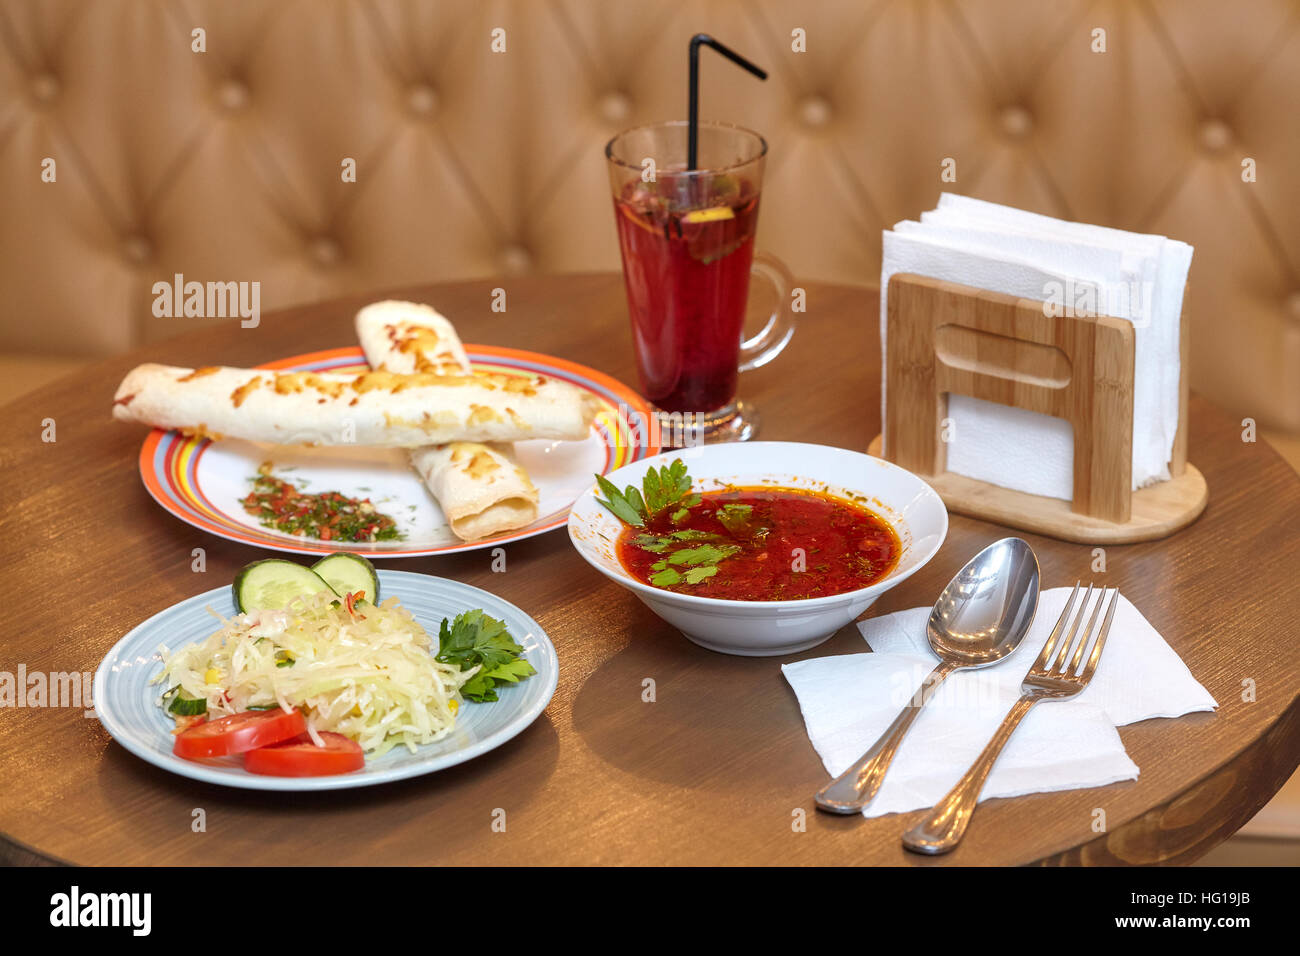 Mittagessen-set mit Shaurma, rote Suppe und Salat, Essen Stockfoto